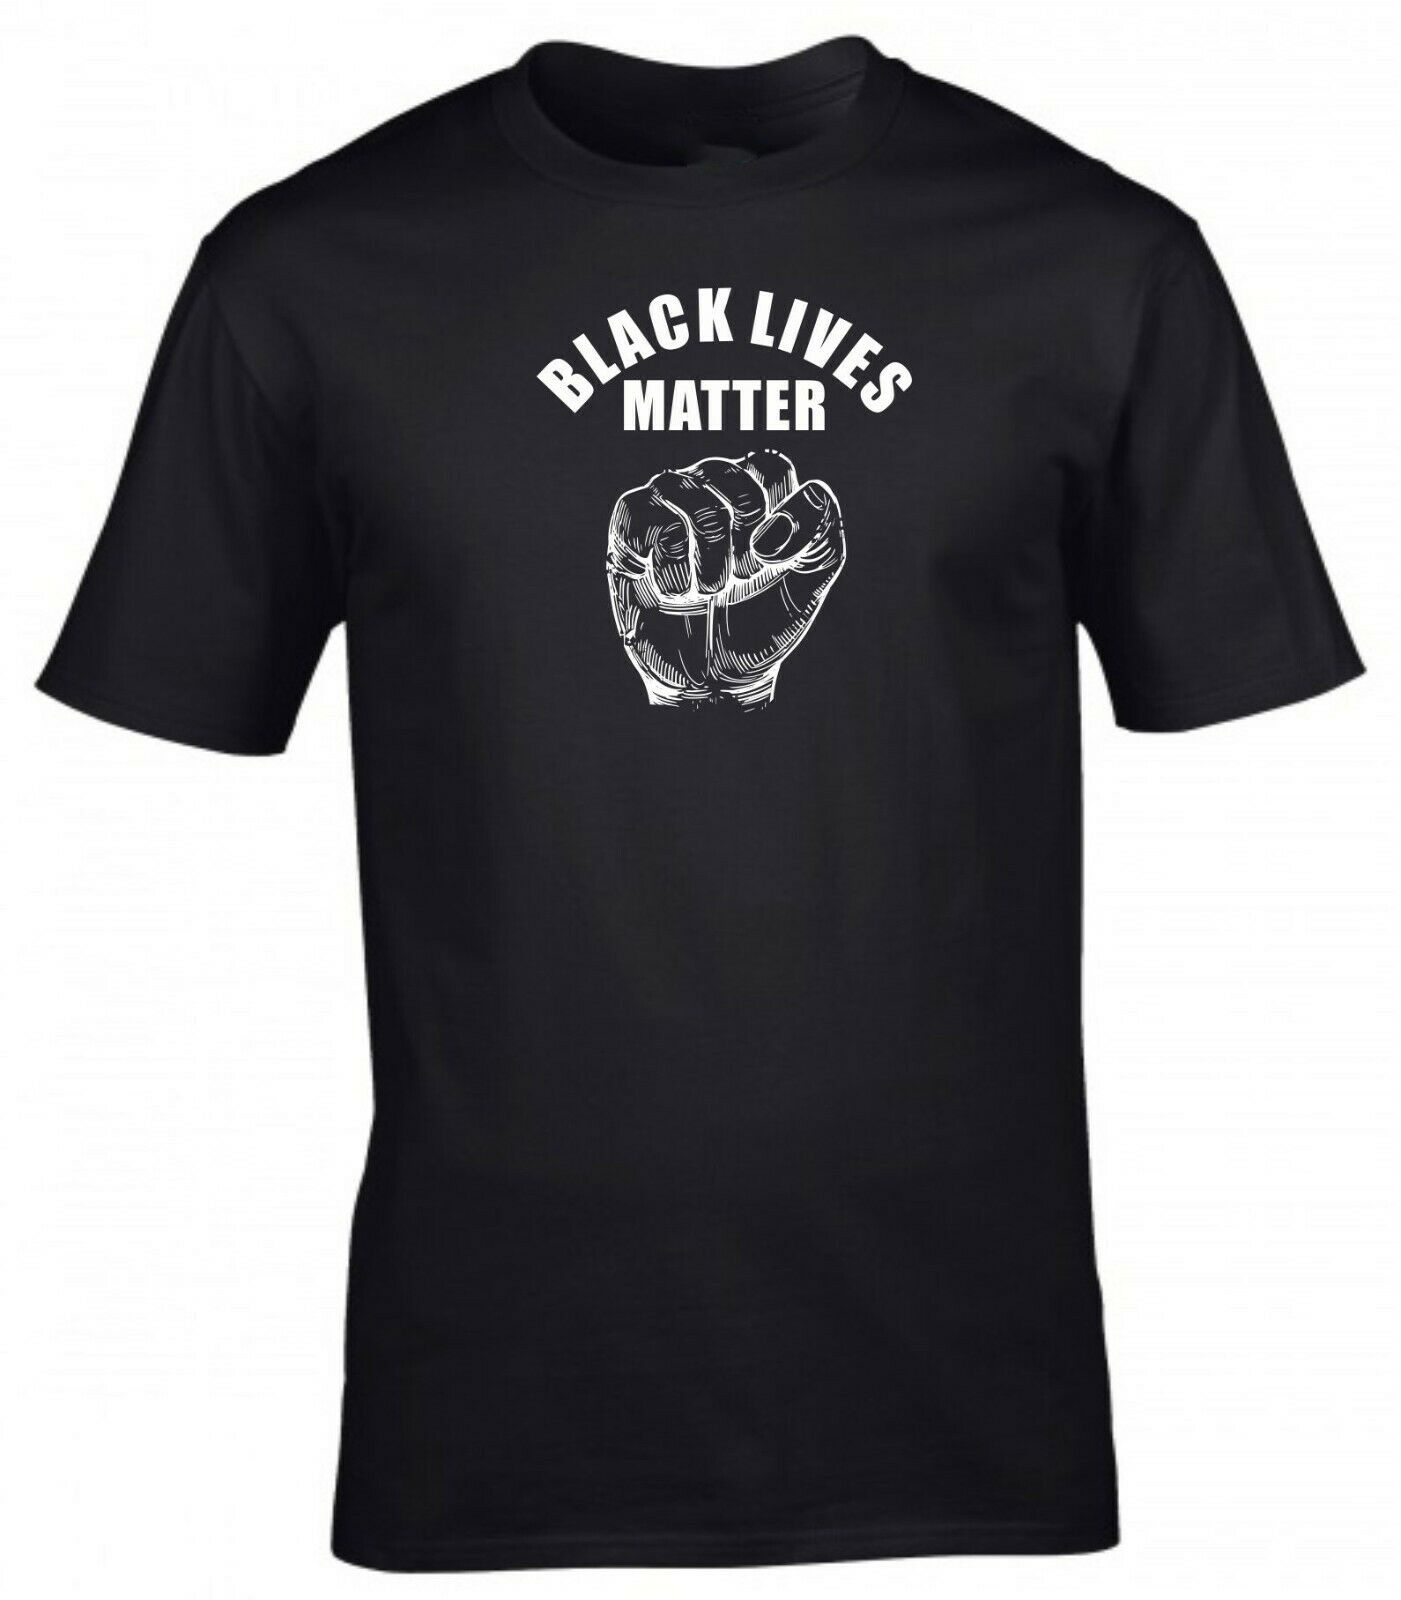 Black Lives Matter T-shirt ...